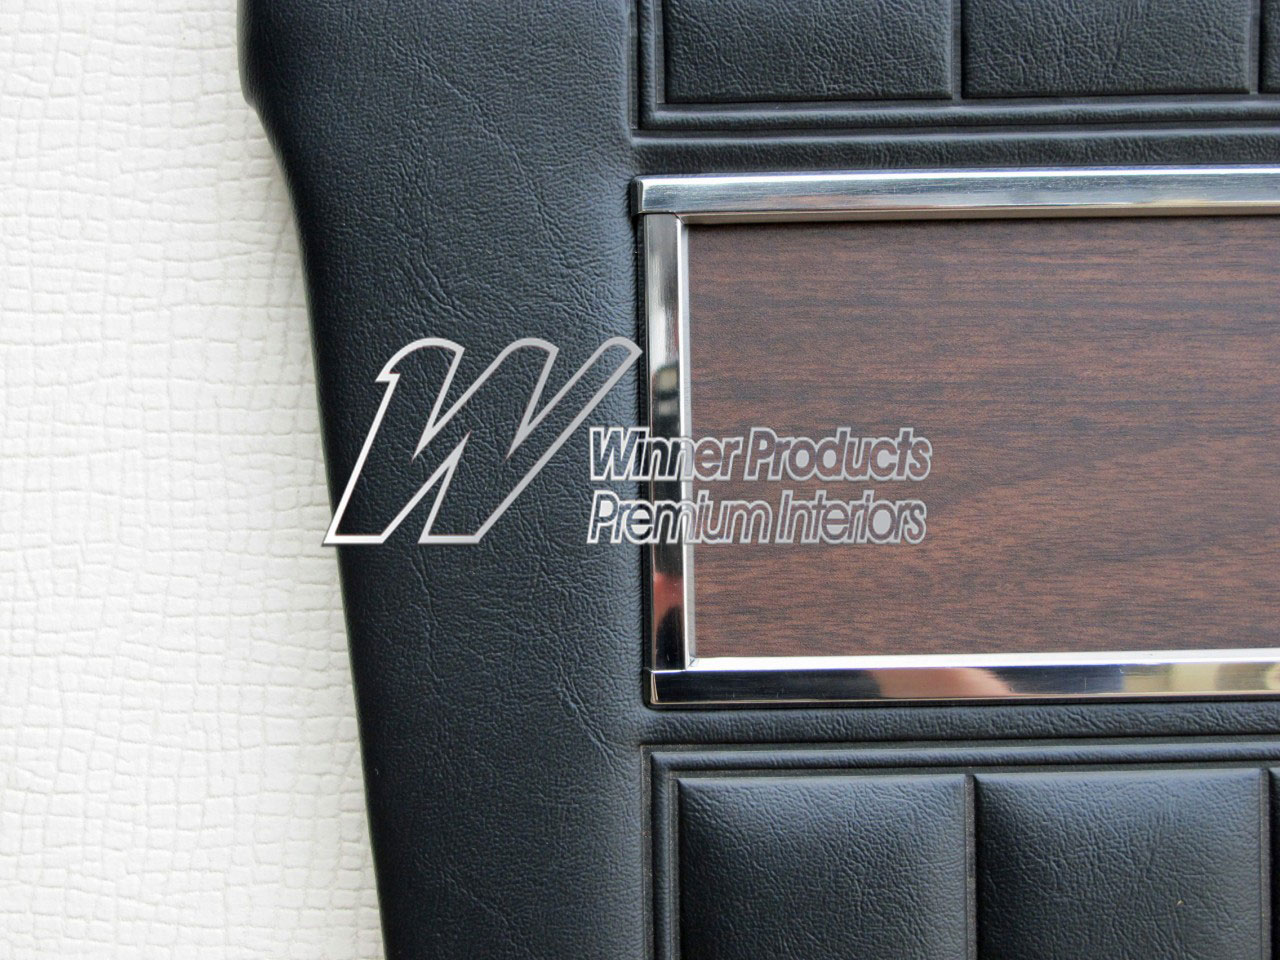 Holden Premier HK Premier Sedan 10S Black & Castillion Weave Door Trims (Image 2 of 2)